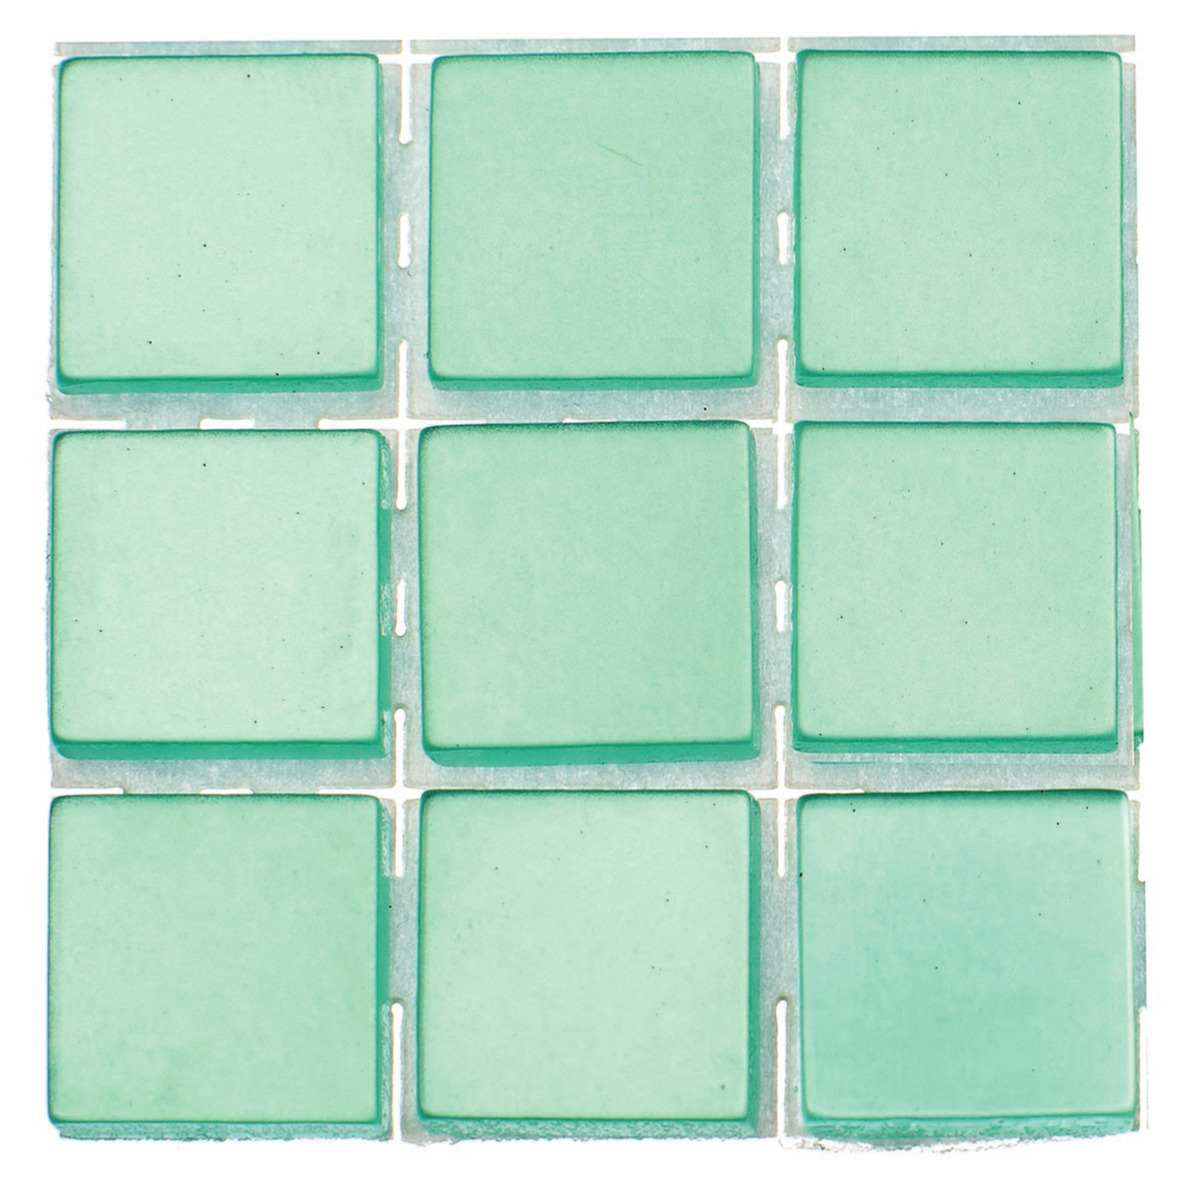 63x stuks mozaieken maken steentjes-tegels kleur turquoise 10 x 10 x 2 mm